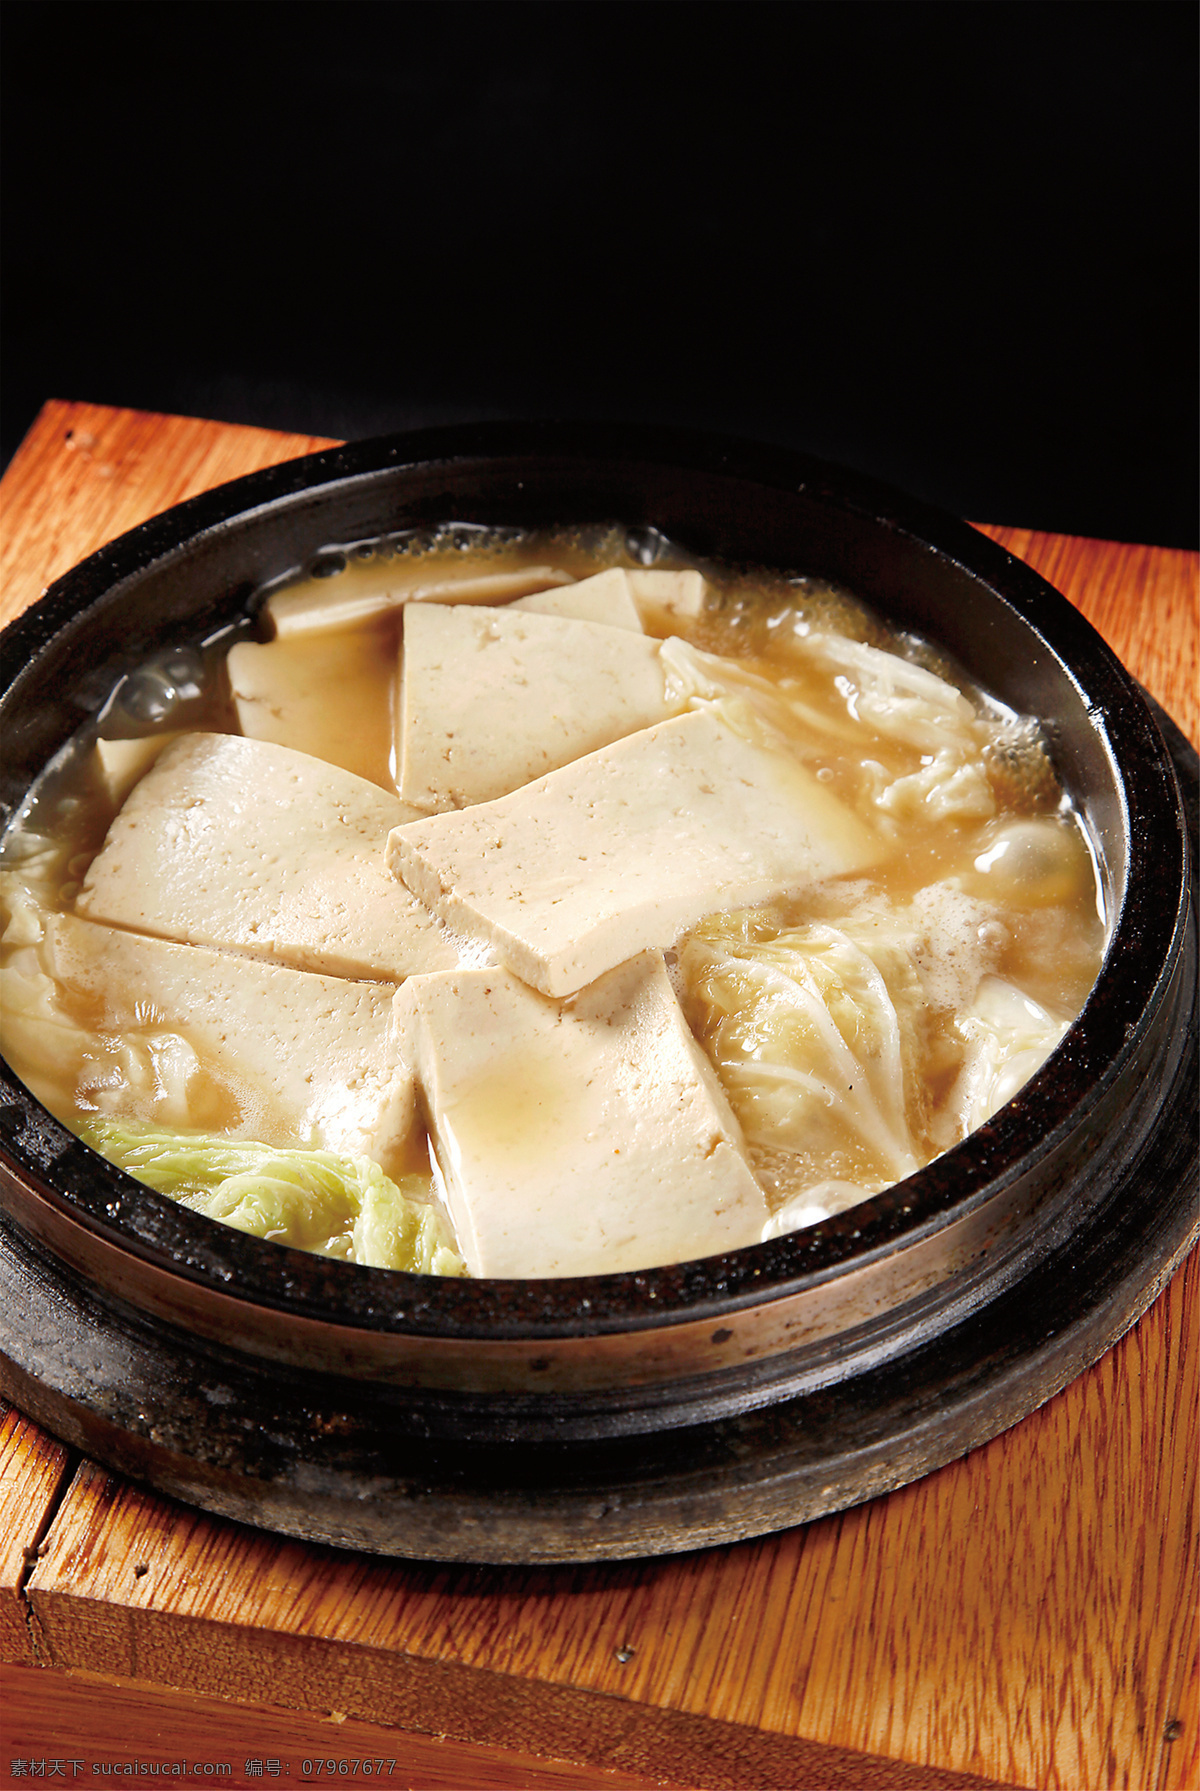 石 锅 白菜 豆腐 石锅白菜豆腐 美食 传统美食 餐饮美食 高清菜谱用图